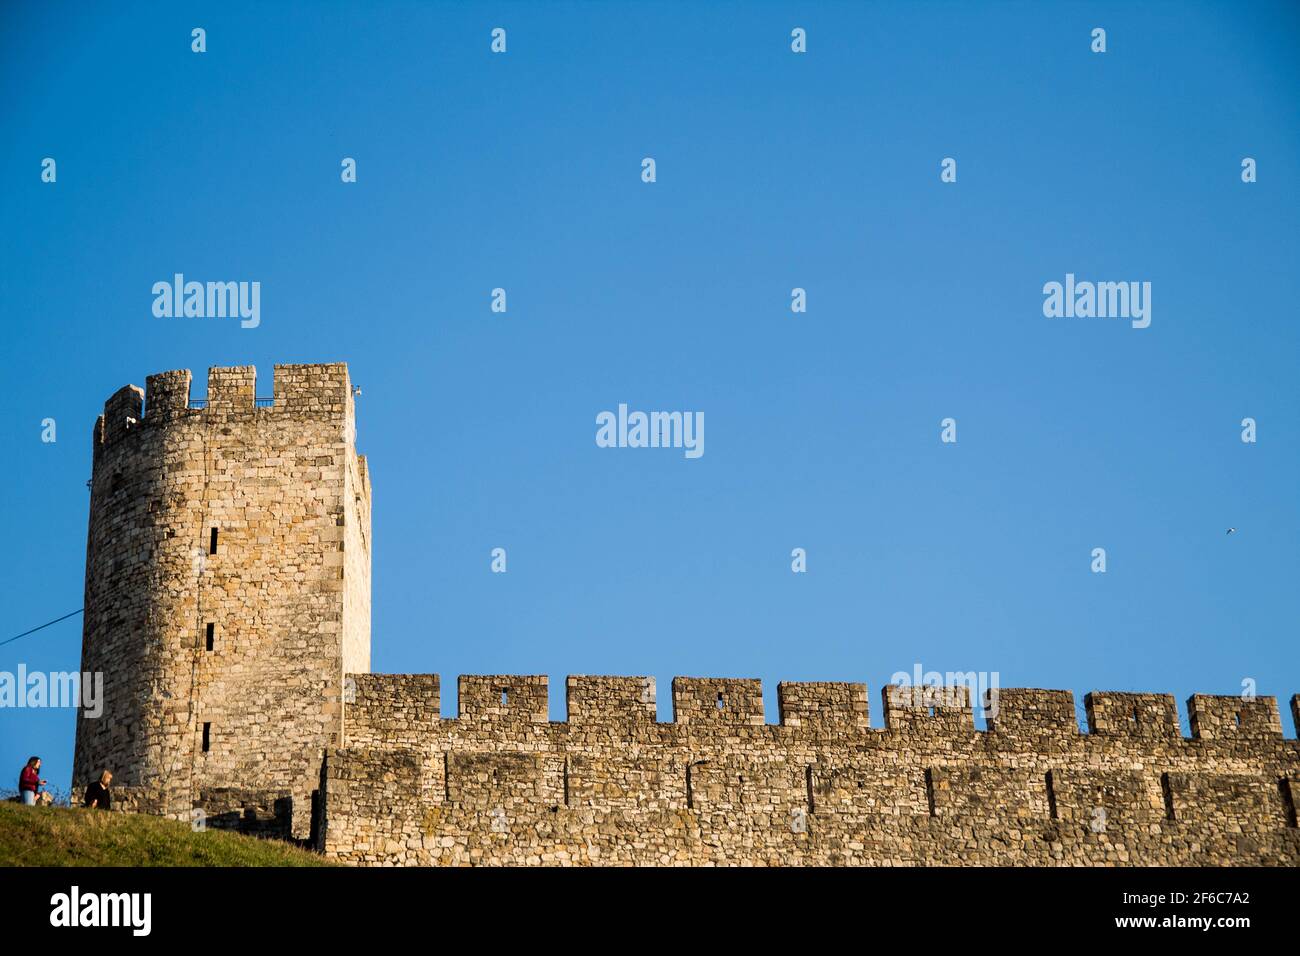 Esta es una antigua fortaleza en Belgrado, Serbia. El nombre es Kalemegdan. Fue construido por el pueblo turco en el primer siglo. Foto de stock